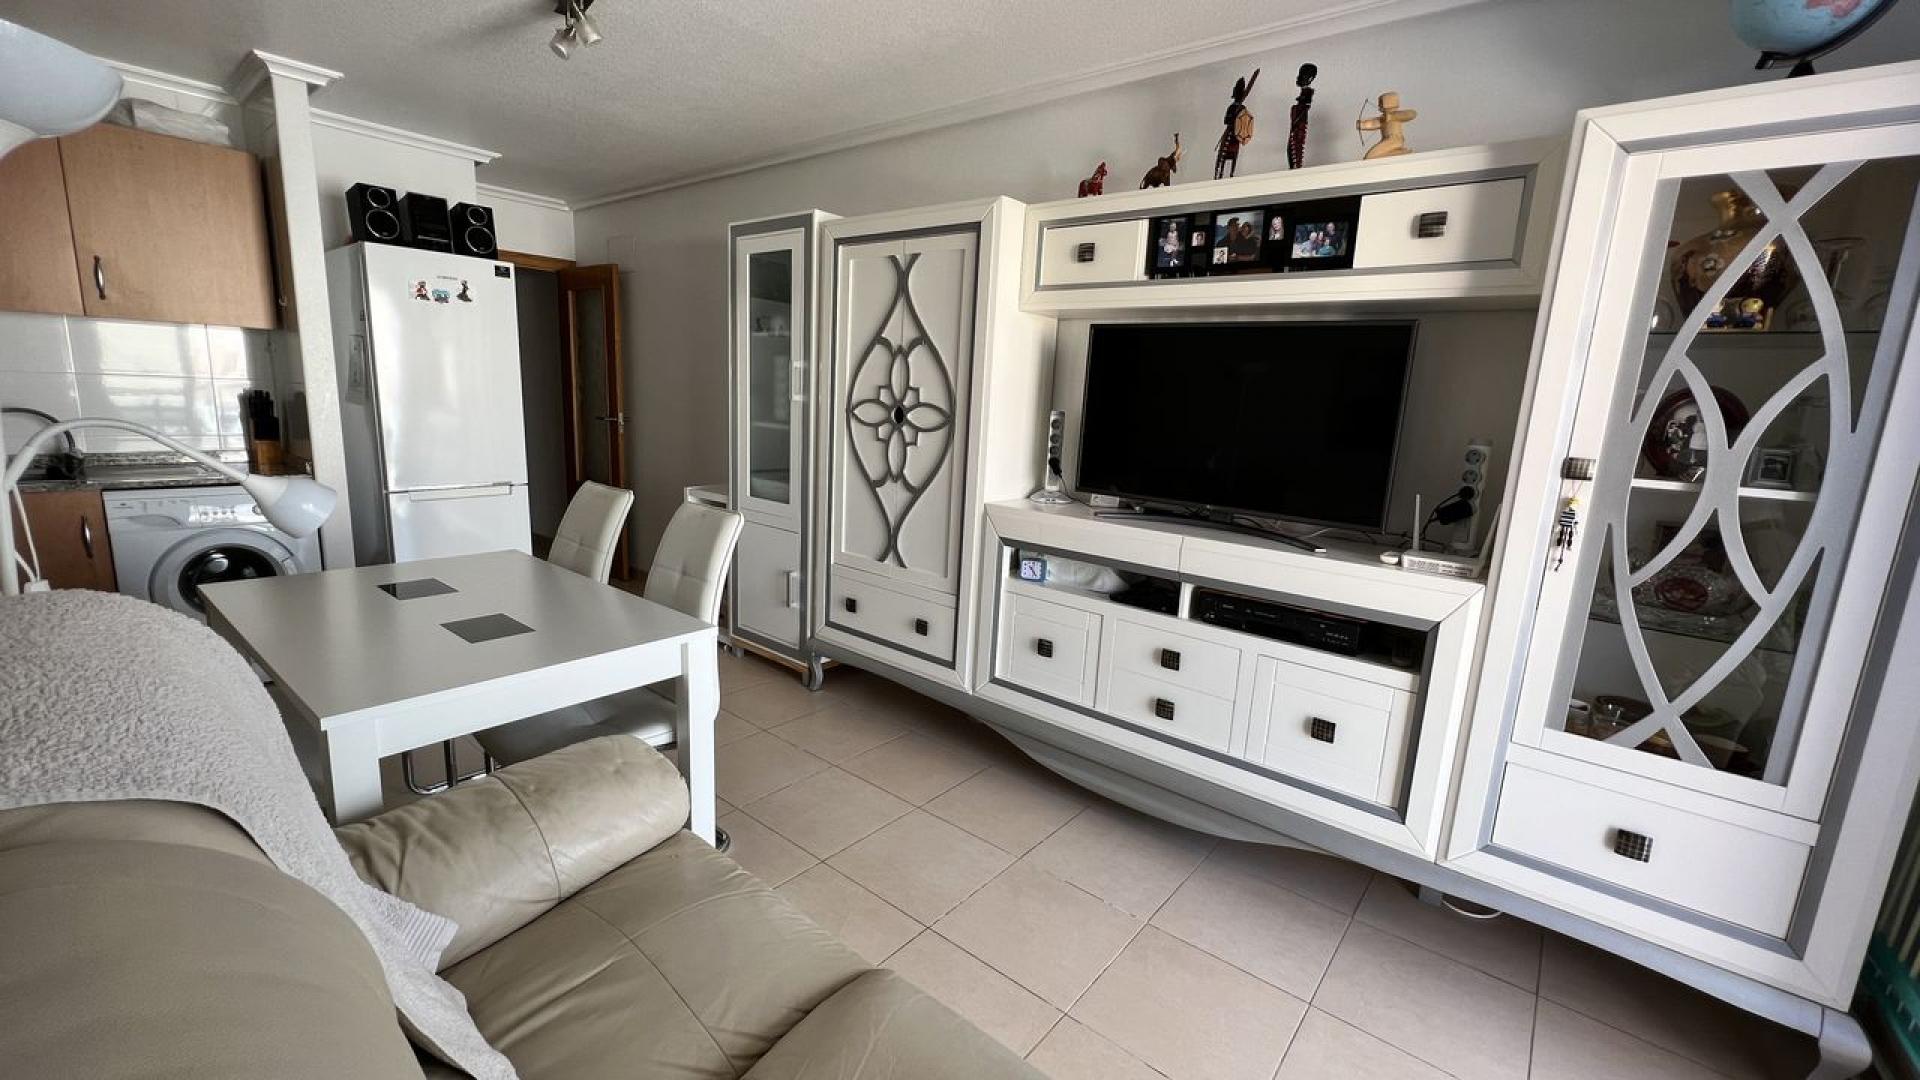 Torrevieja, Apartamento moderno con aparcamiento privado a 800m de la playa